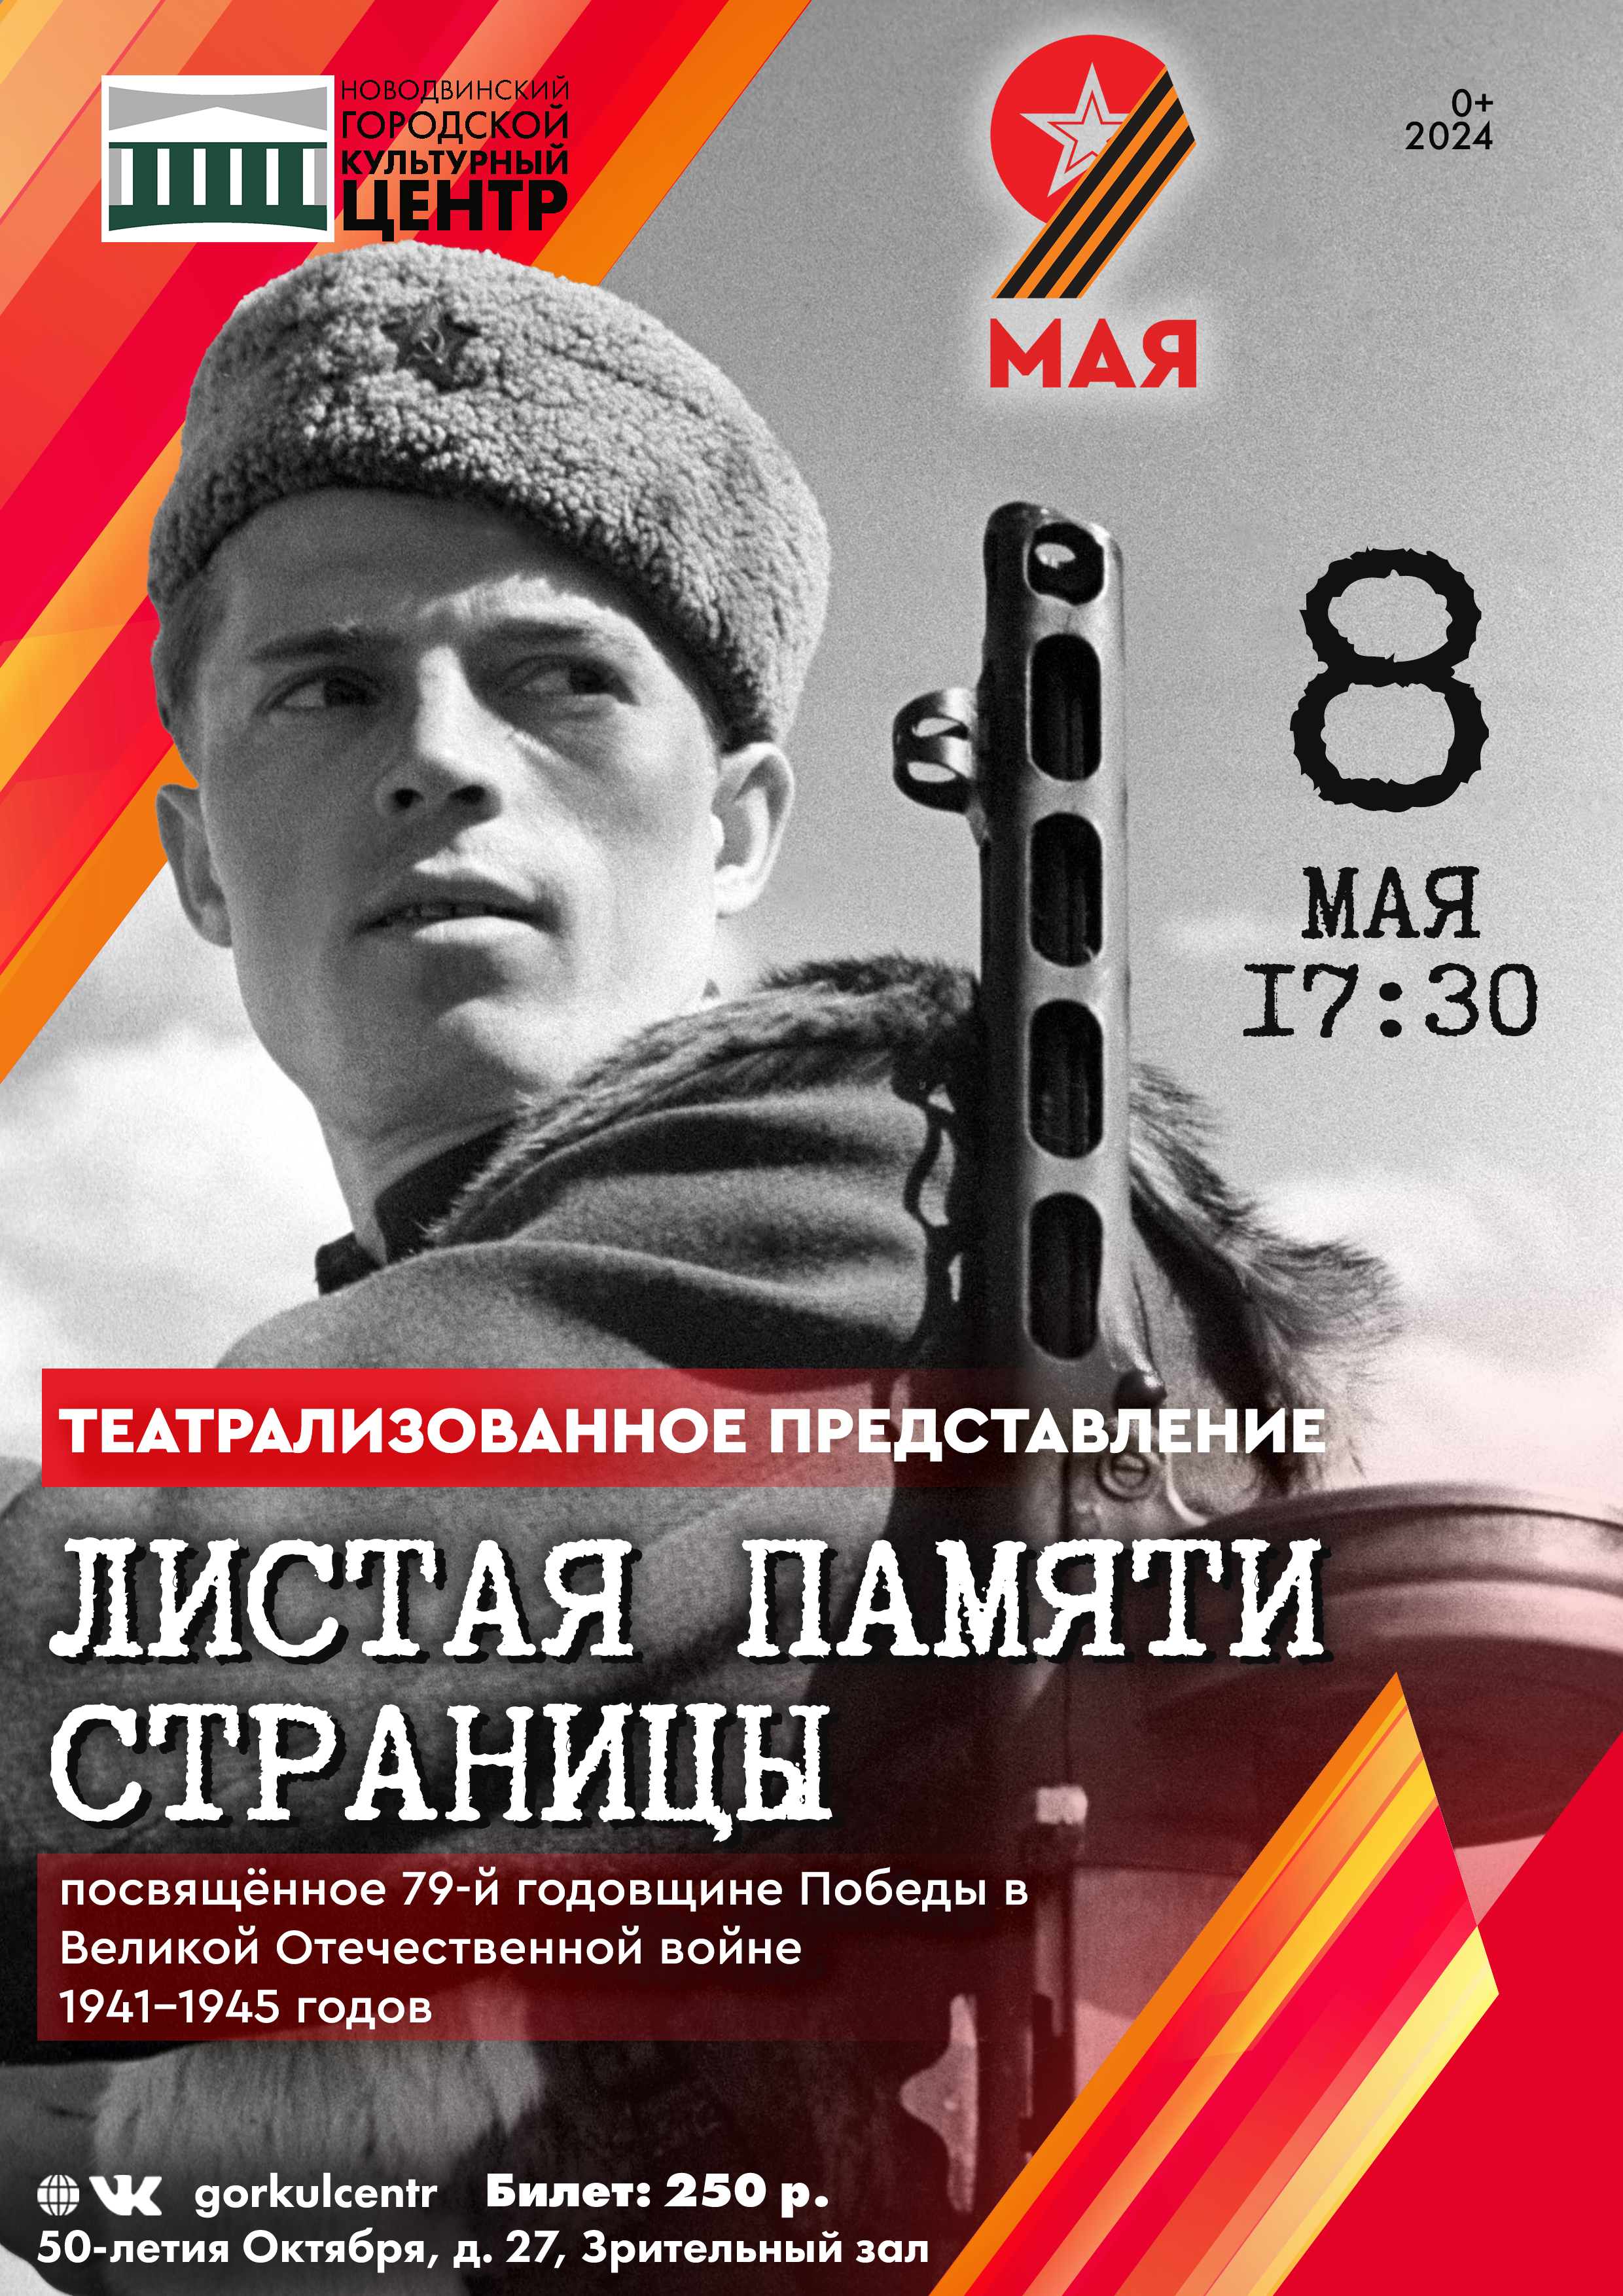 Театрализованное представление «Листая памяти страницы», посвящённое 79-й годовщине Победы в Великой Отечественной войне 1941-1945 годов.